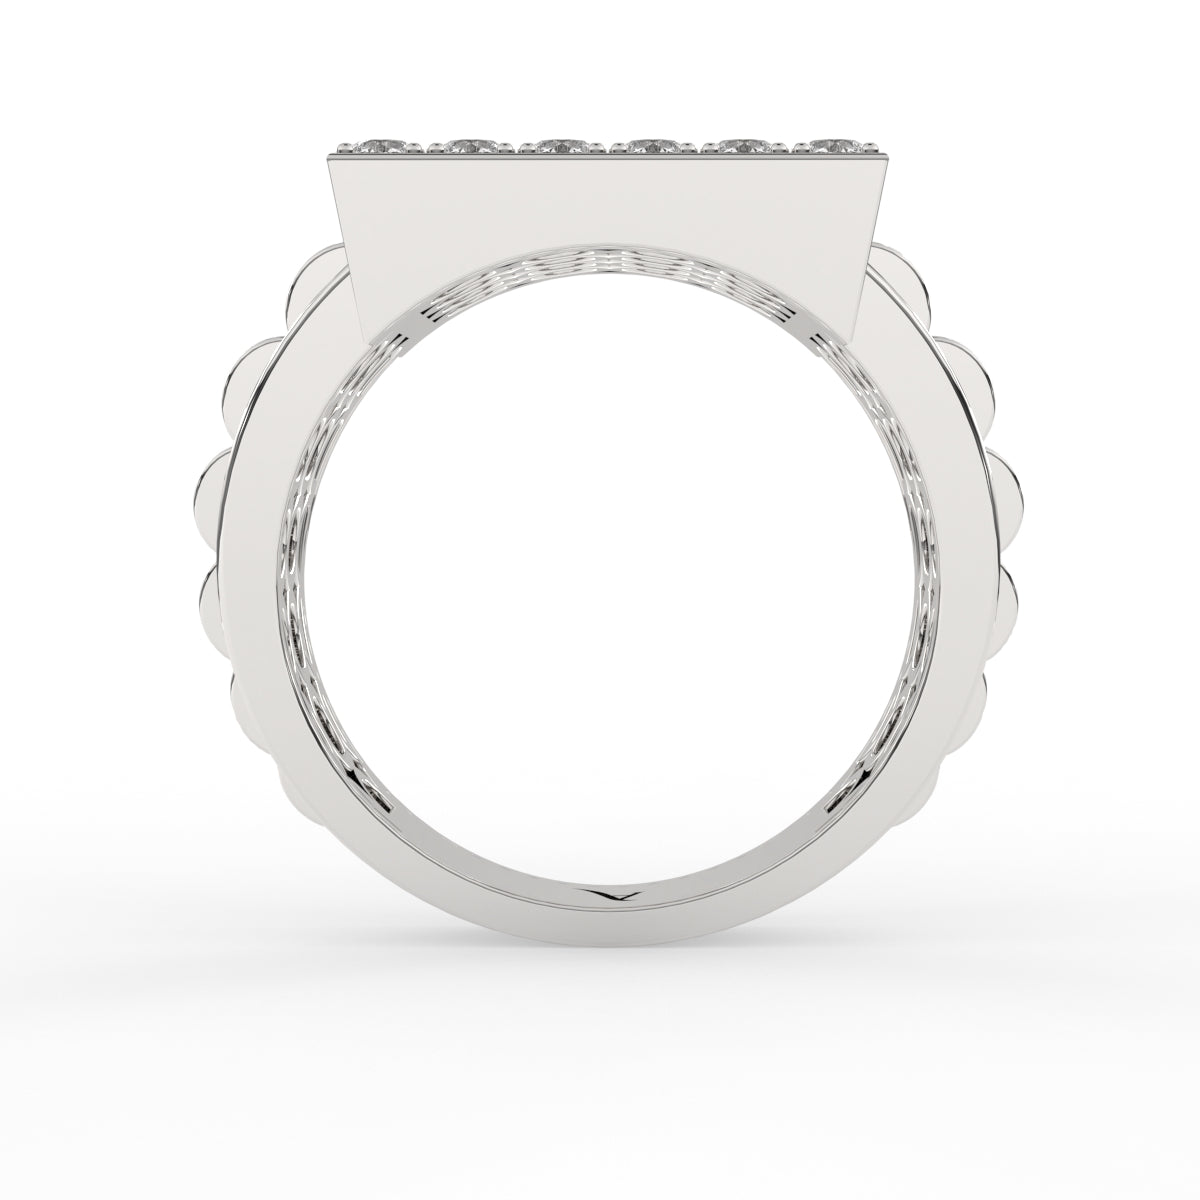 Carson diamond ring for men